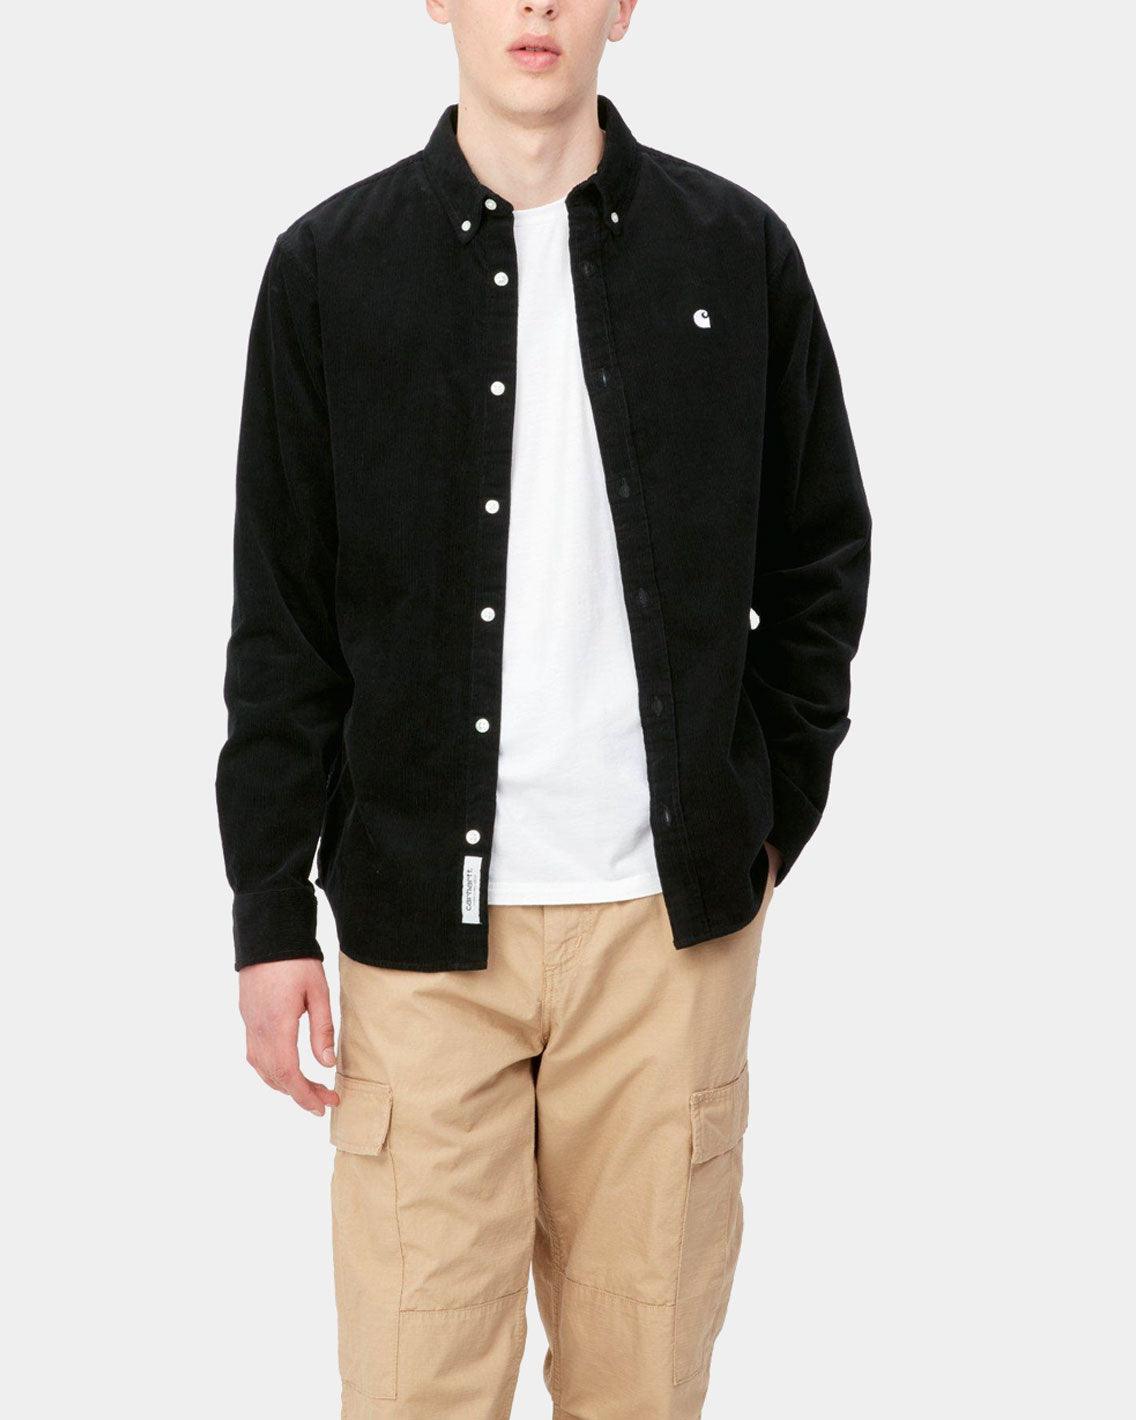 Carhartt - Madison L/S Fine Cord Shirt - Black / Wax Shirts Carhartt   